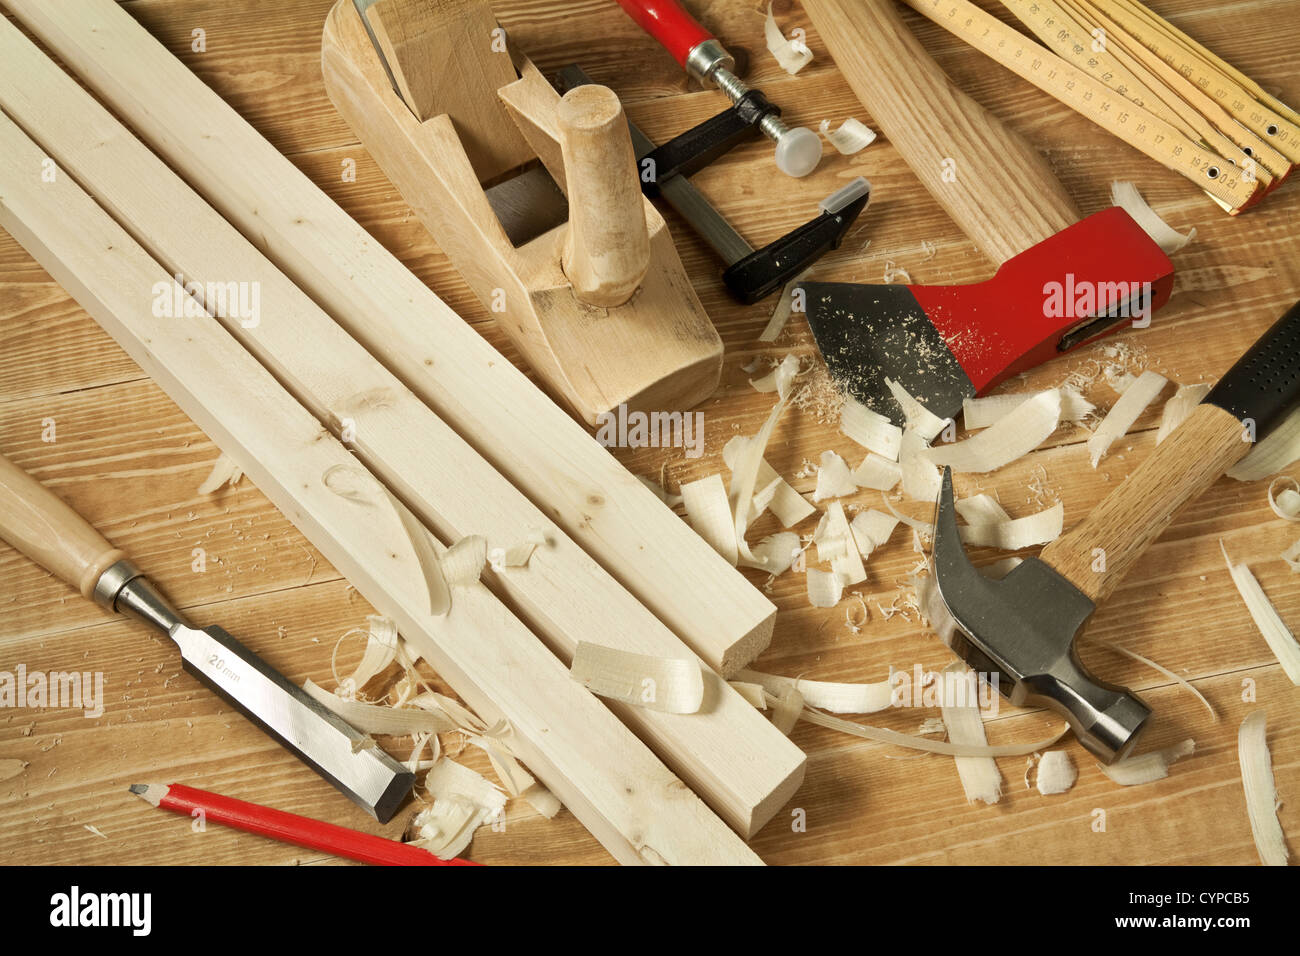 Atelier en bois avec la table d'outils. Banque D'Images